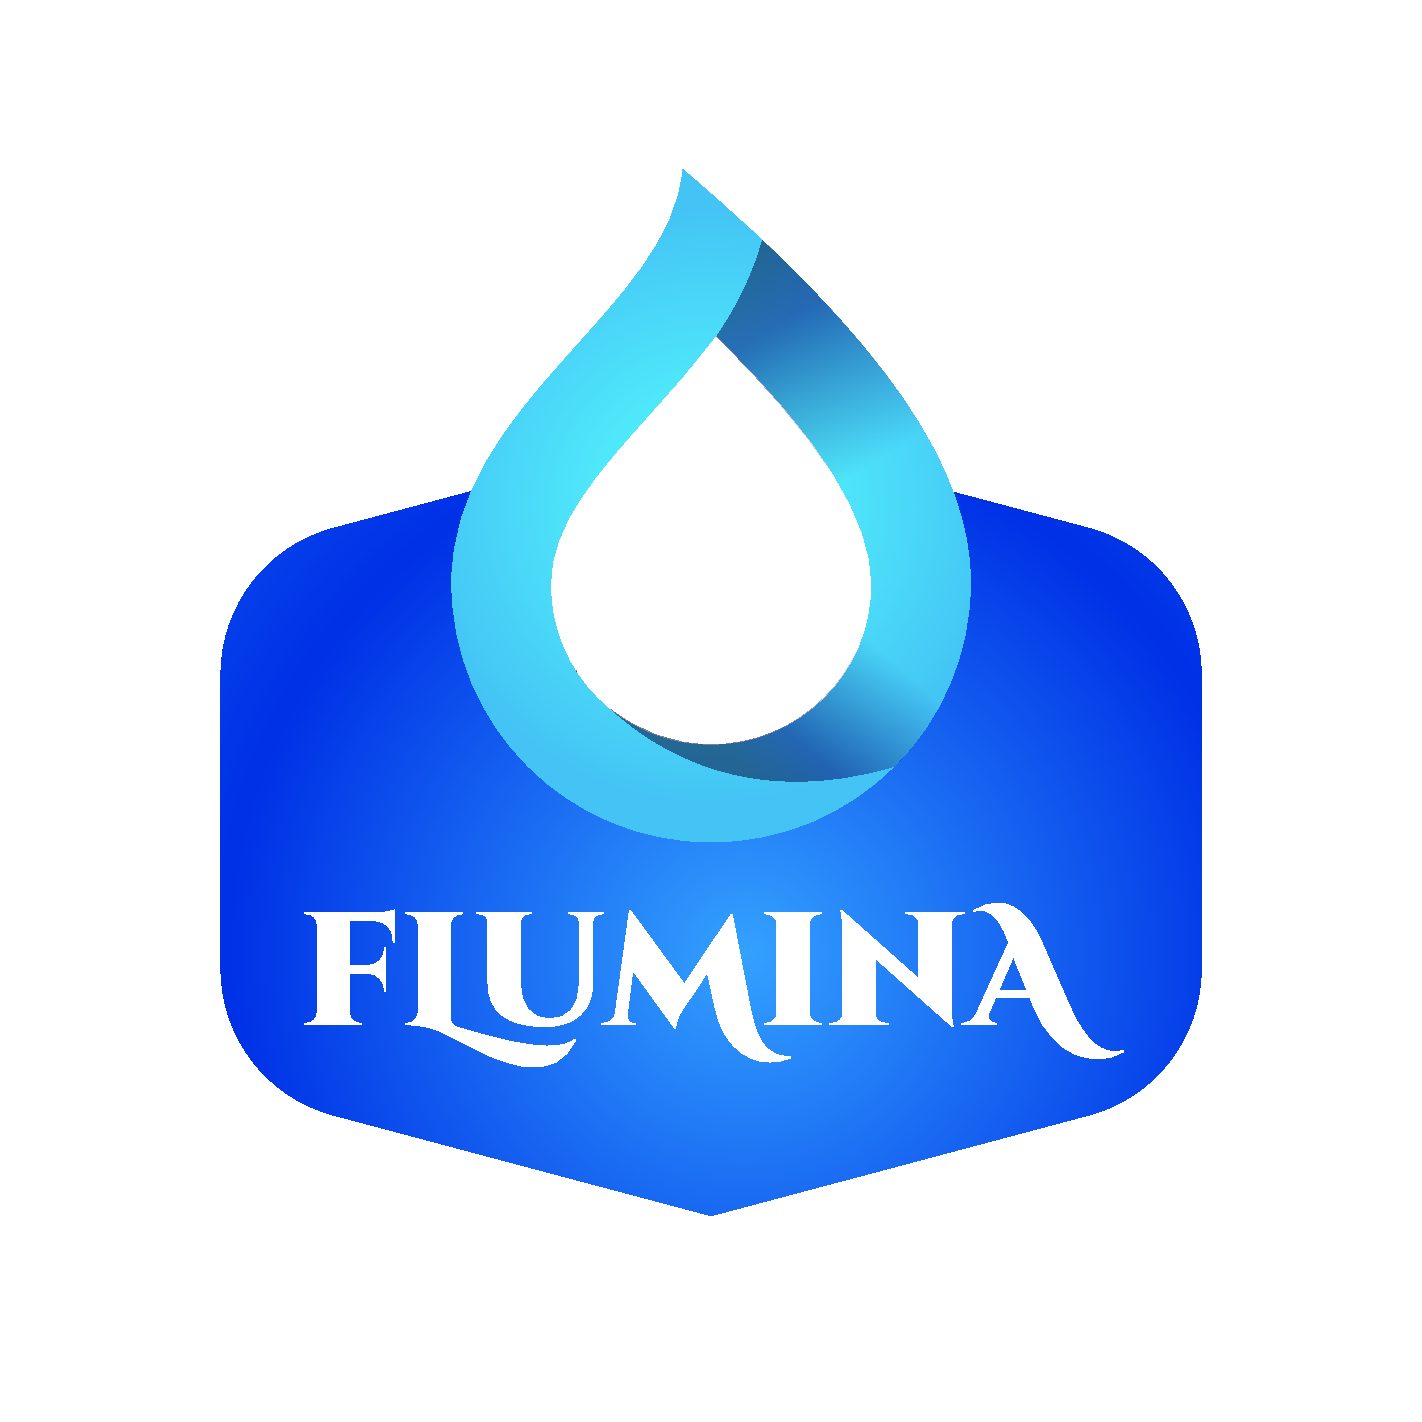 Flumina